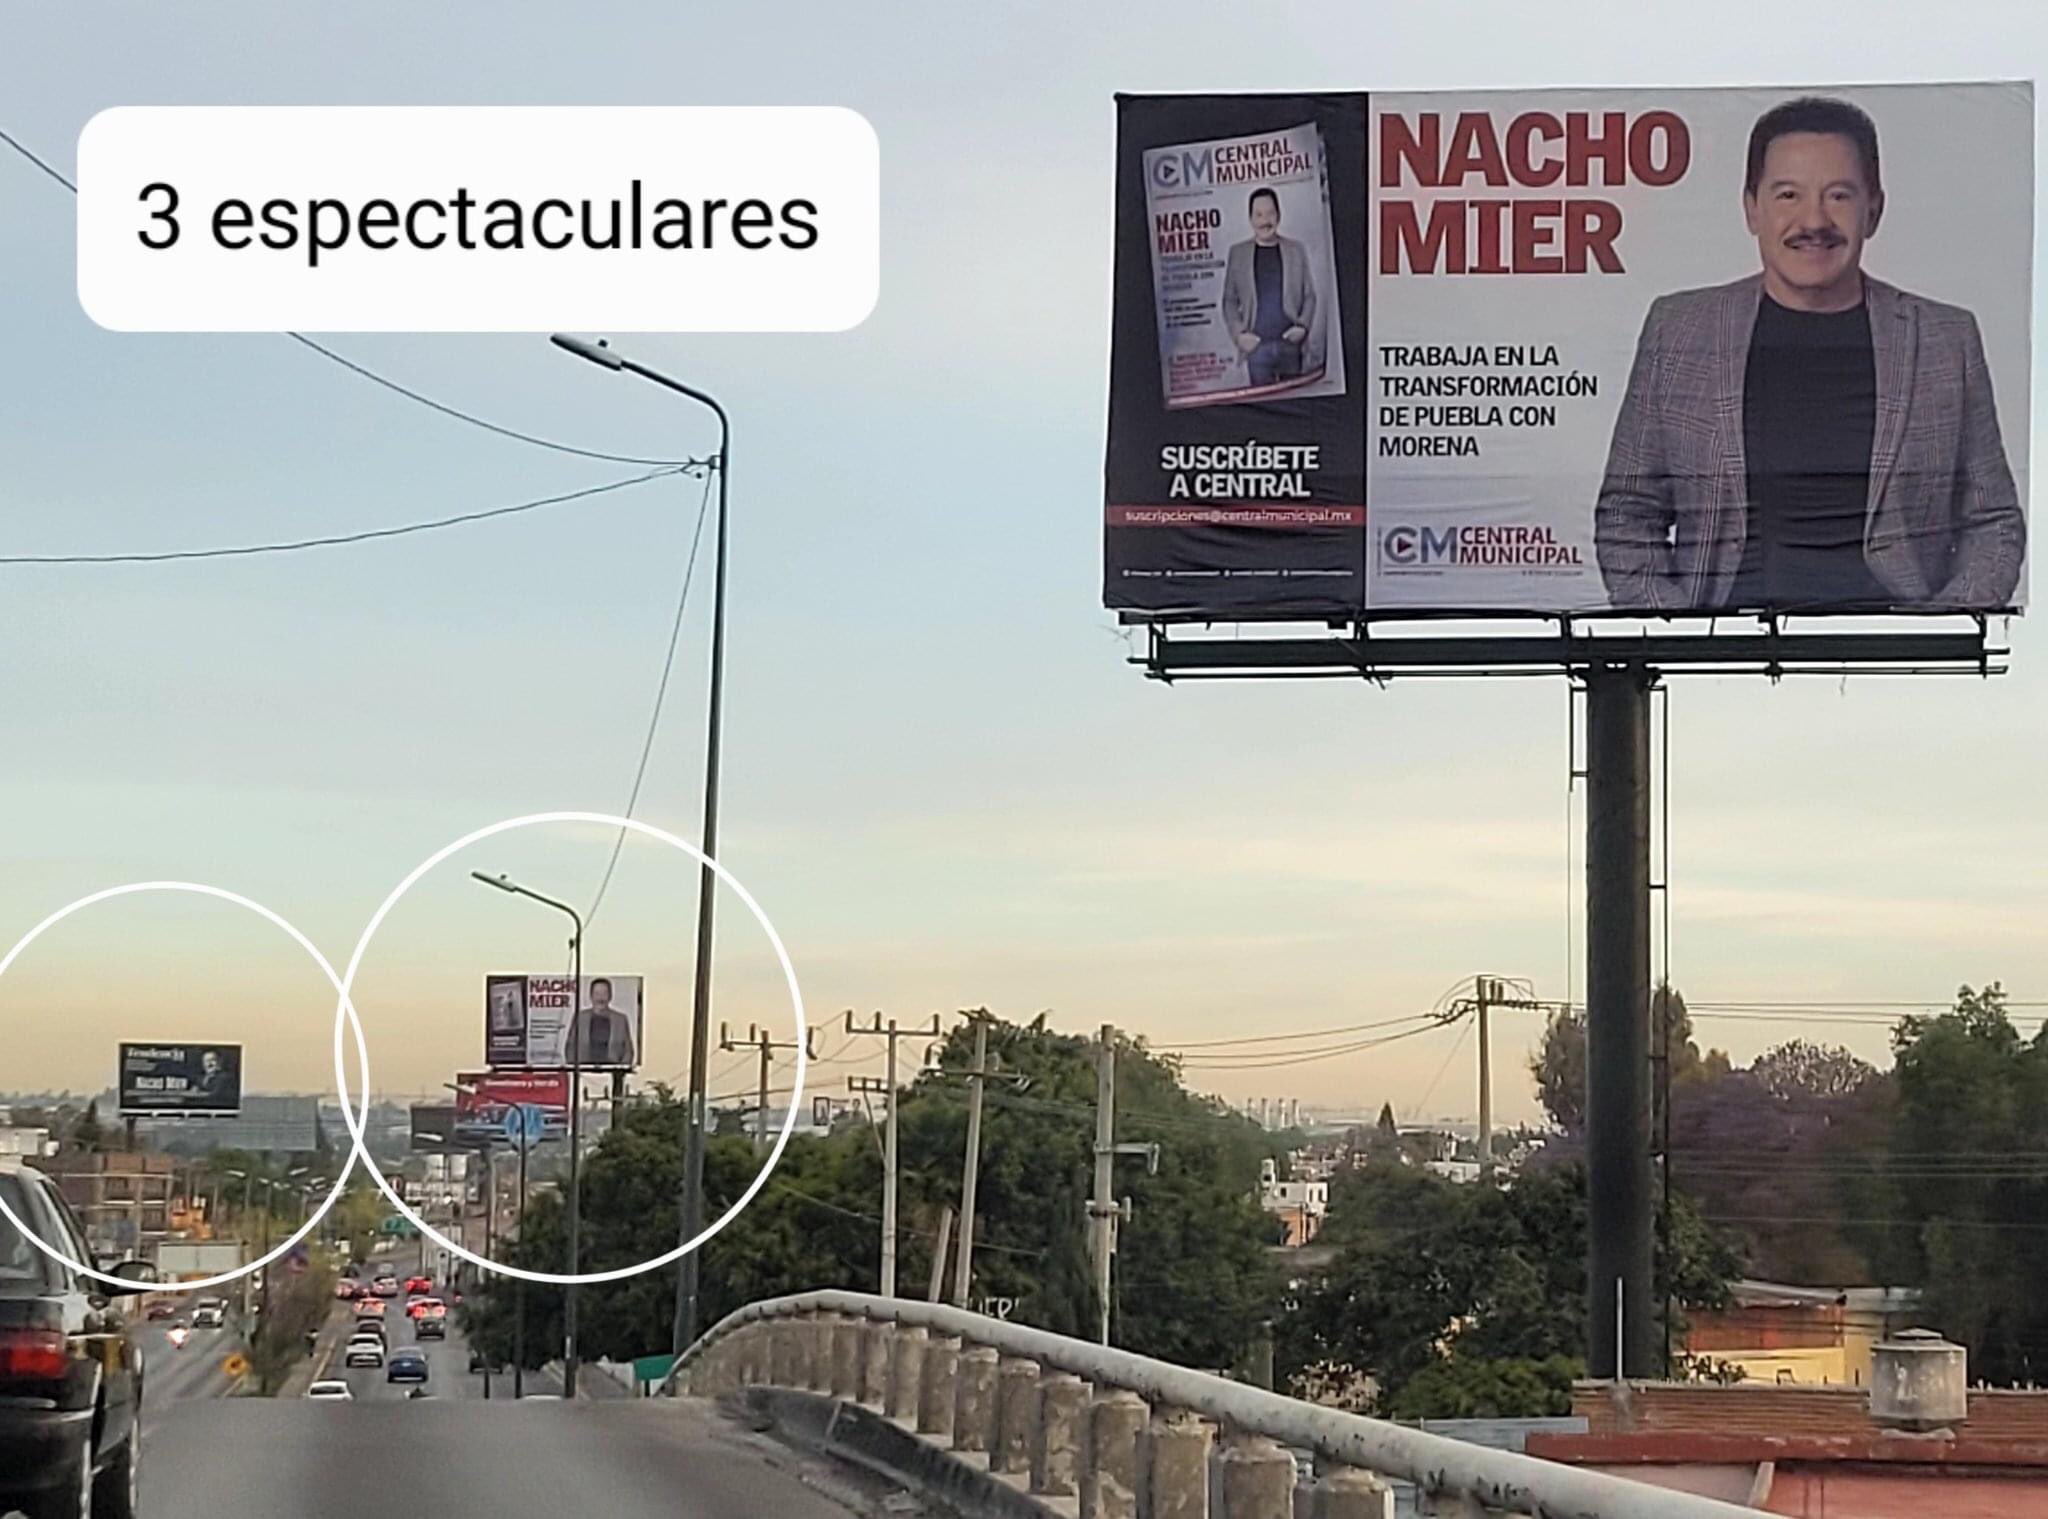 Ignacio Mier El diputado cacique de Puebla 7